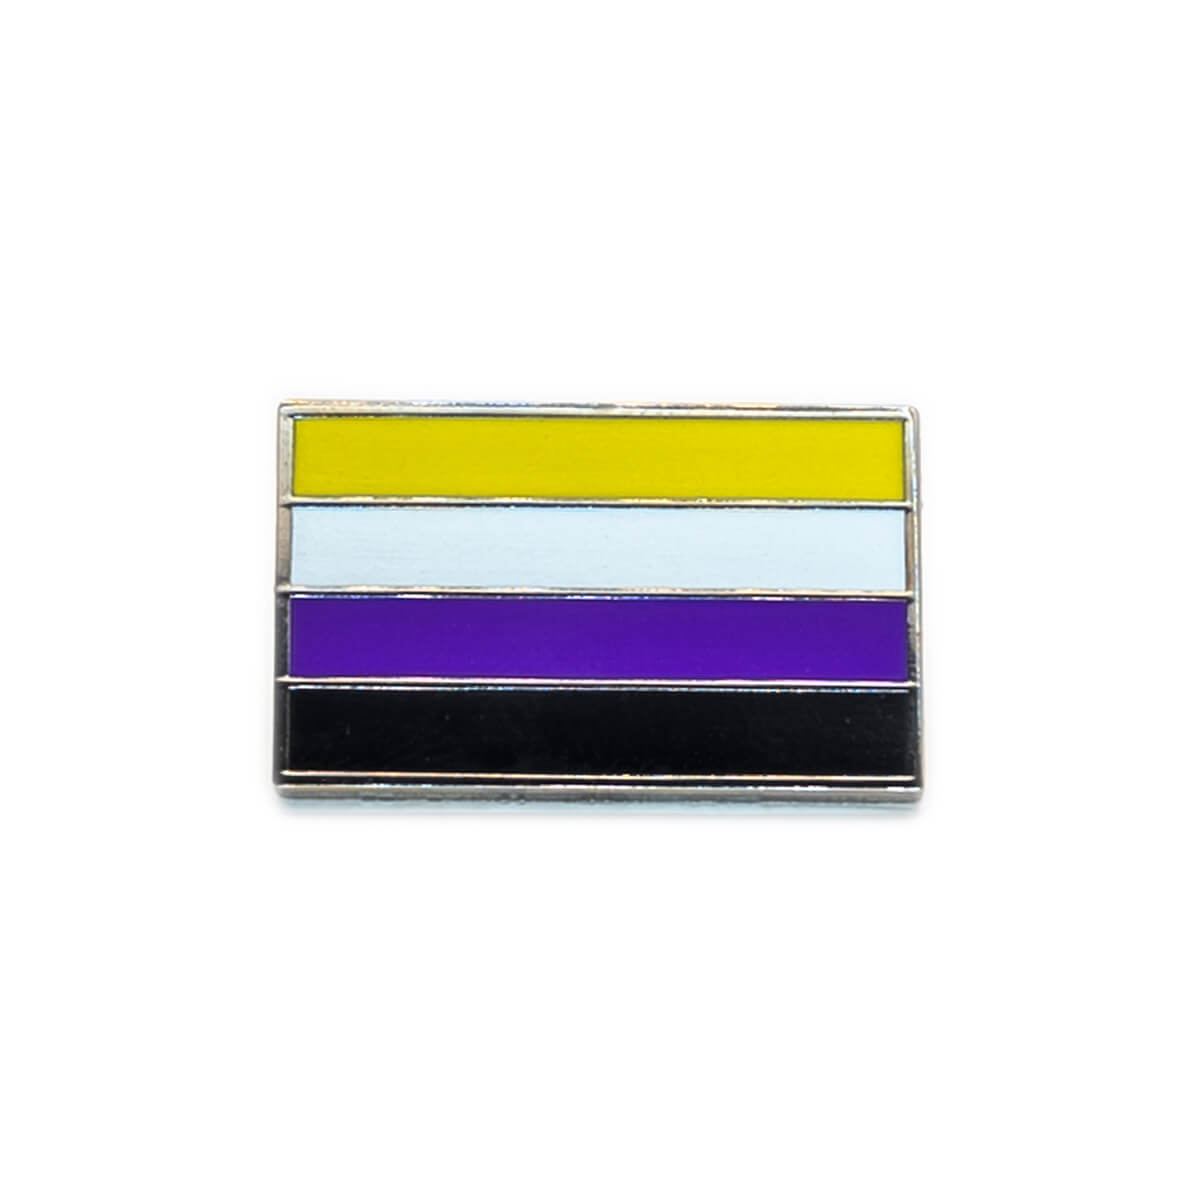 An image of a non-binary flag pin